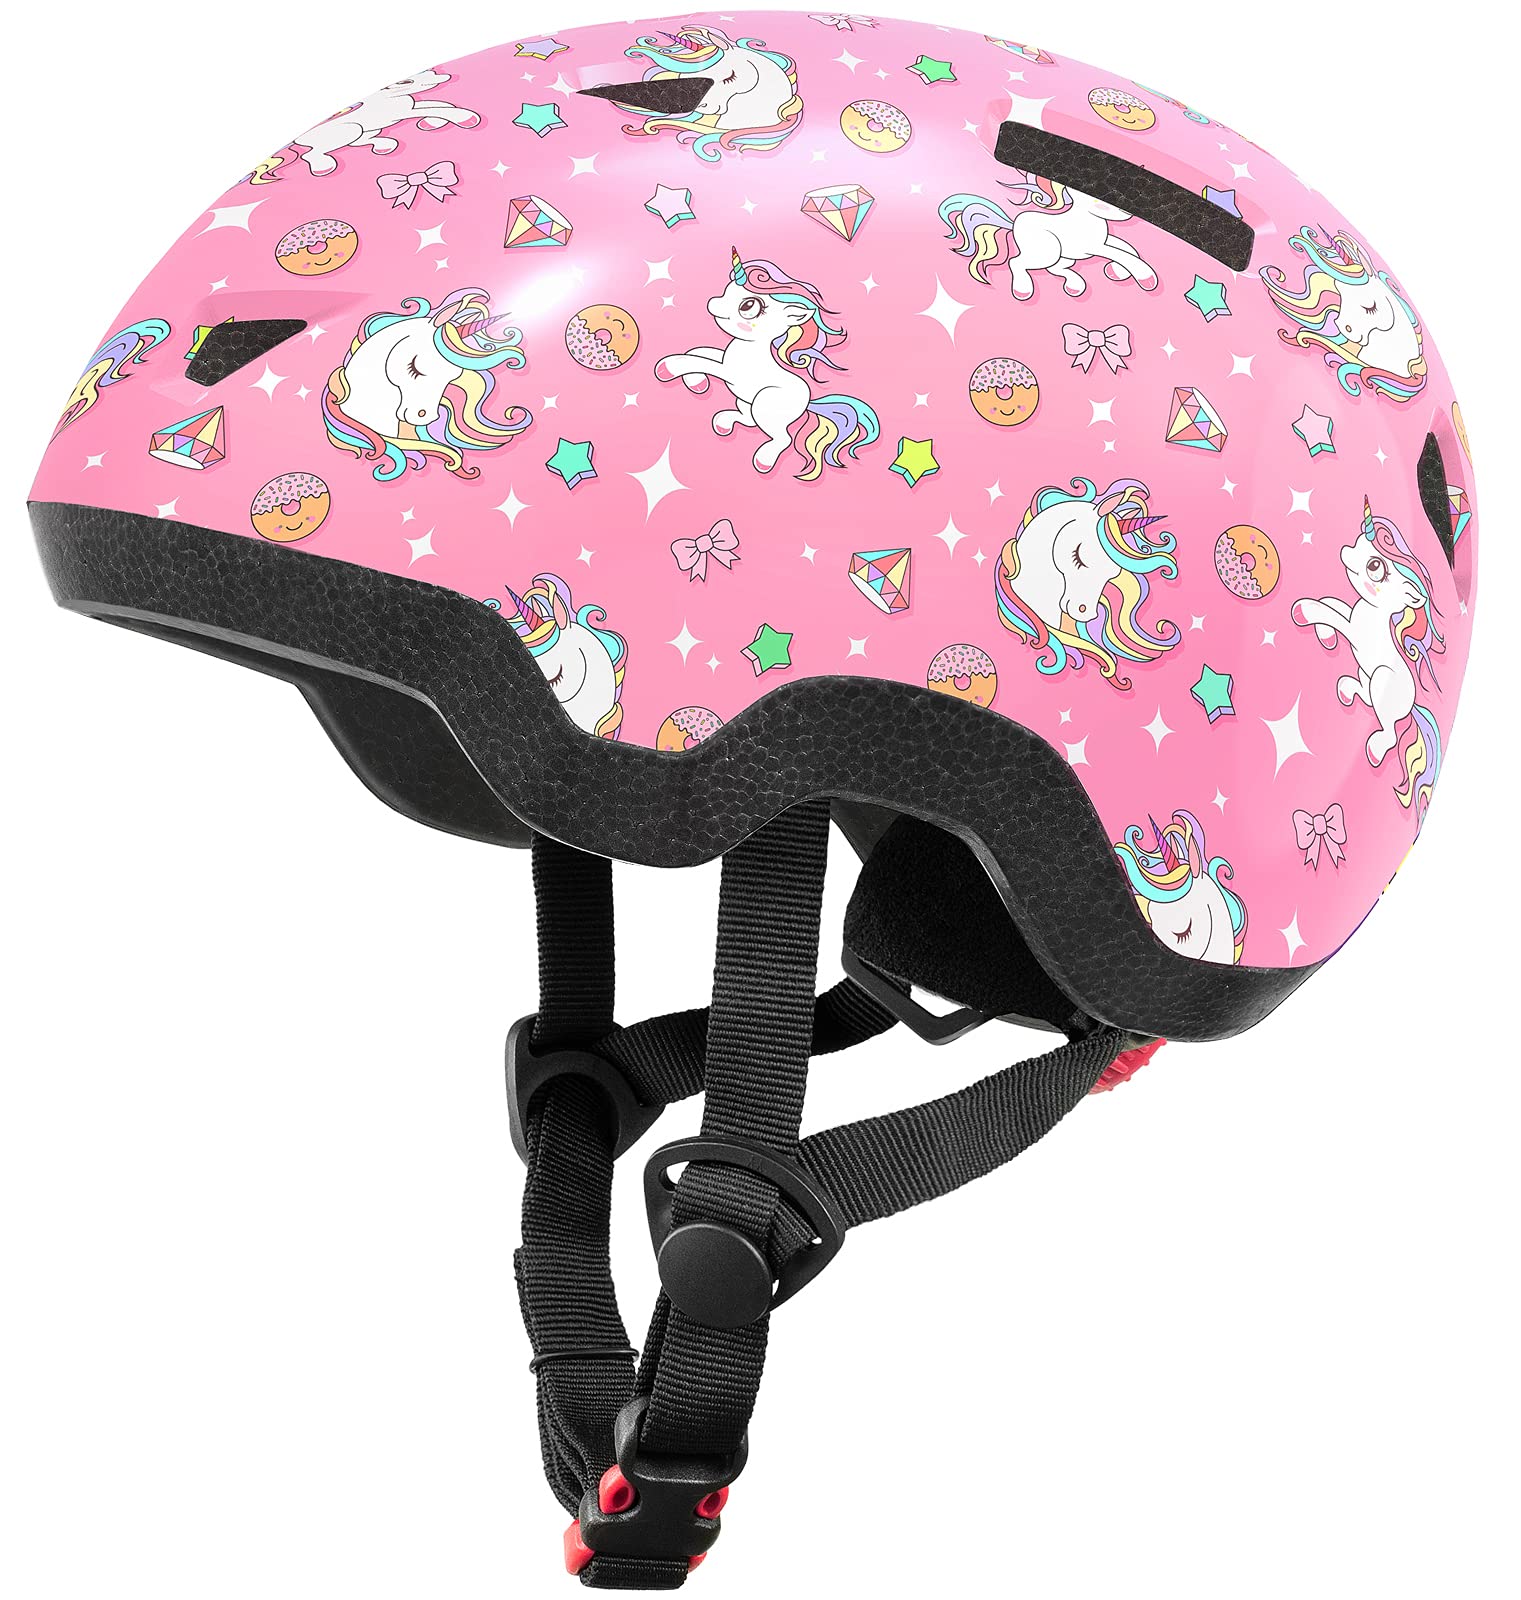 Image of Kids/Toddler Bike Helmet for Infant/Baby to Children